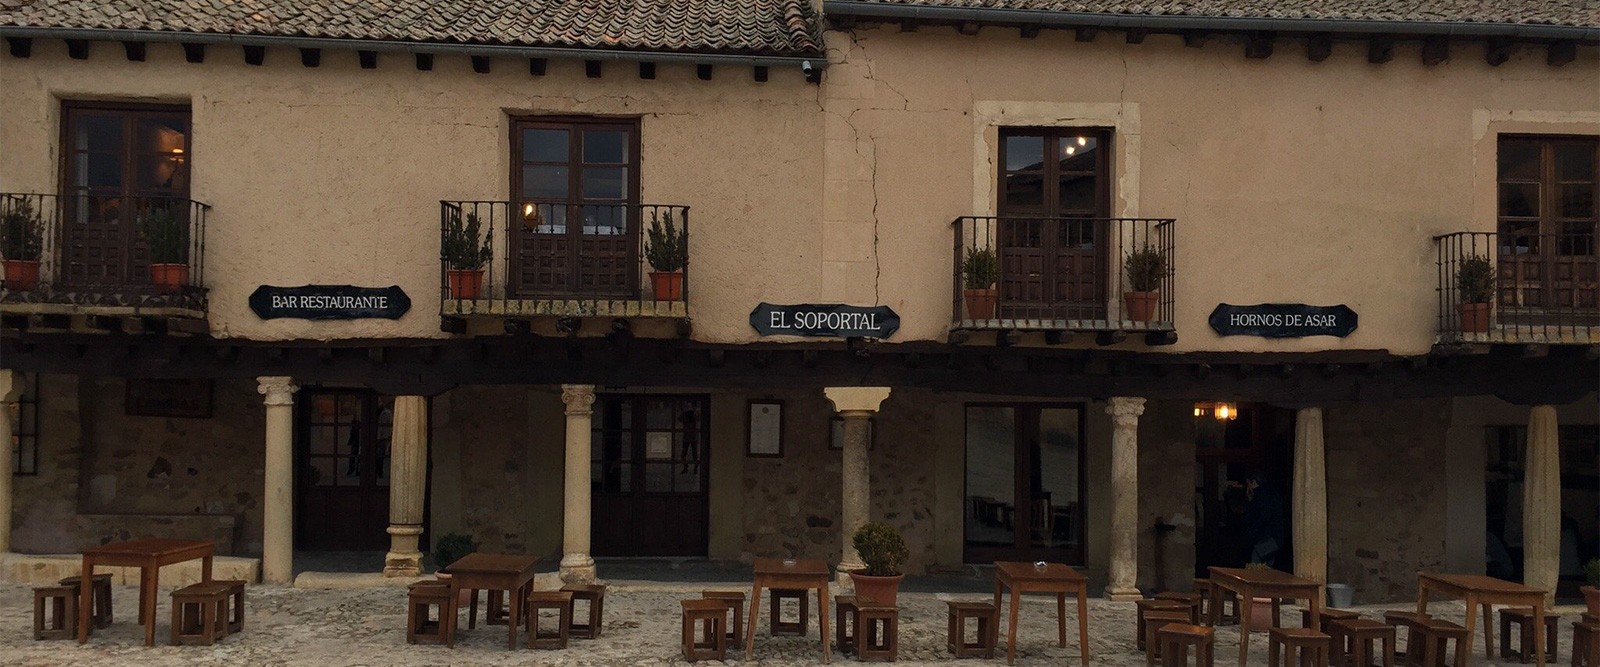 Mesas terraza - Restaurante El Soportal en Pedraza, Segovia